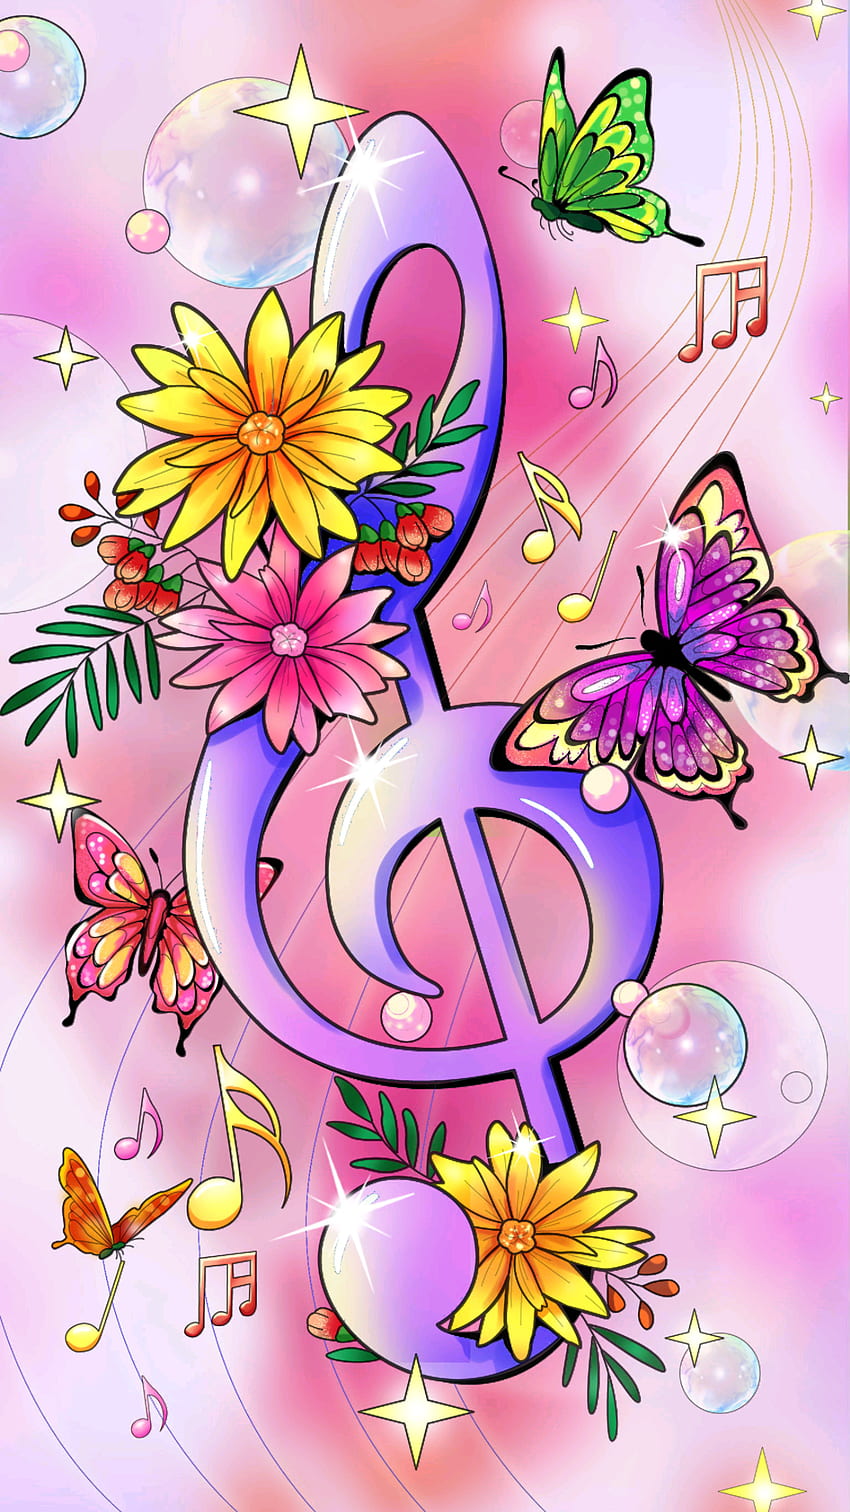 Kupu-kupu musik, merah muda, kelopak wallpaper ponsel HD